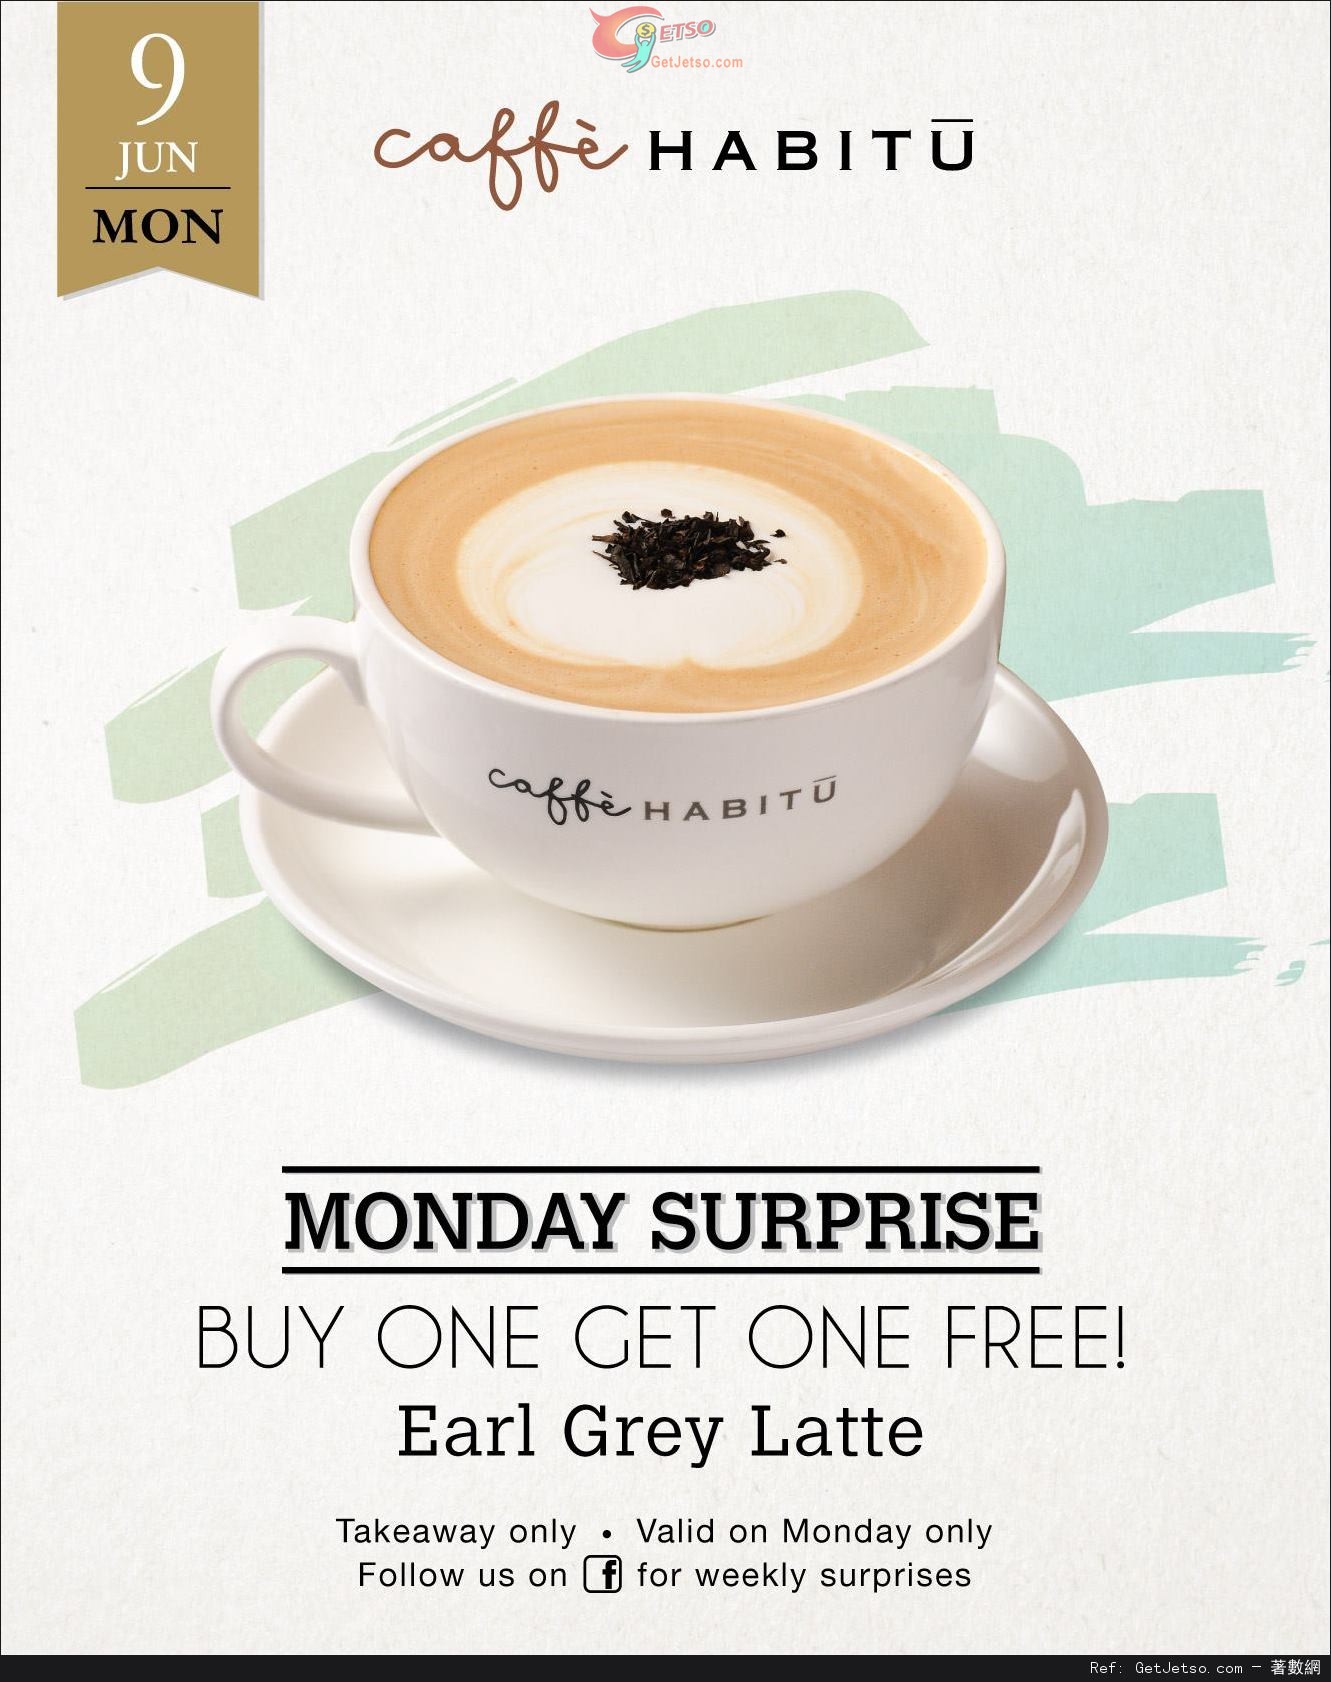 Caffe HABITU Earl Grey Latte 買1送1優惠(14年6月9日)圖片1